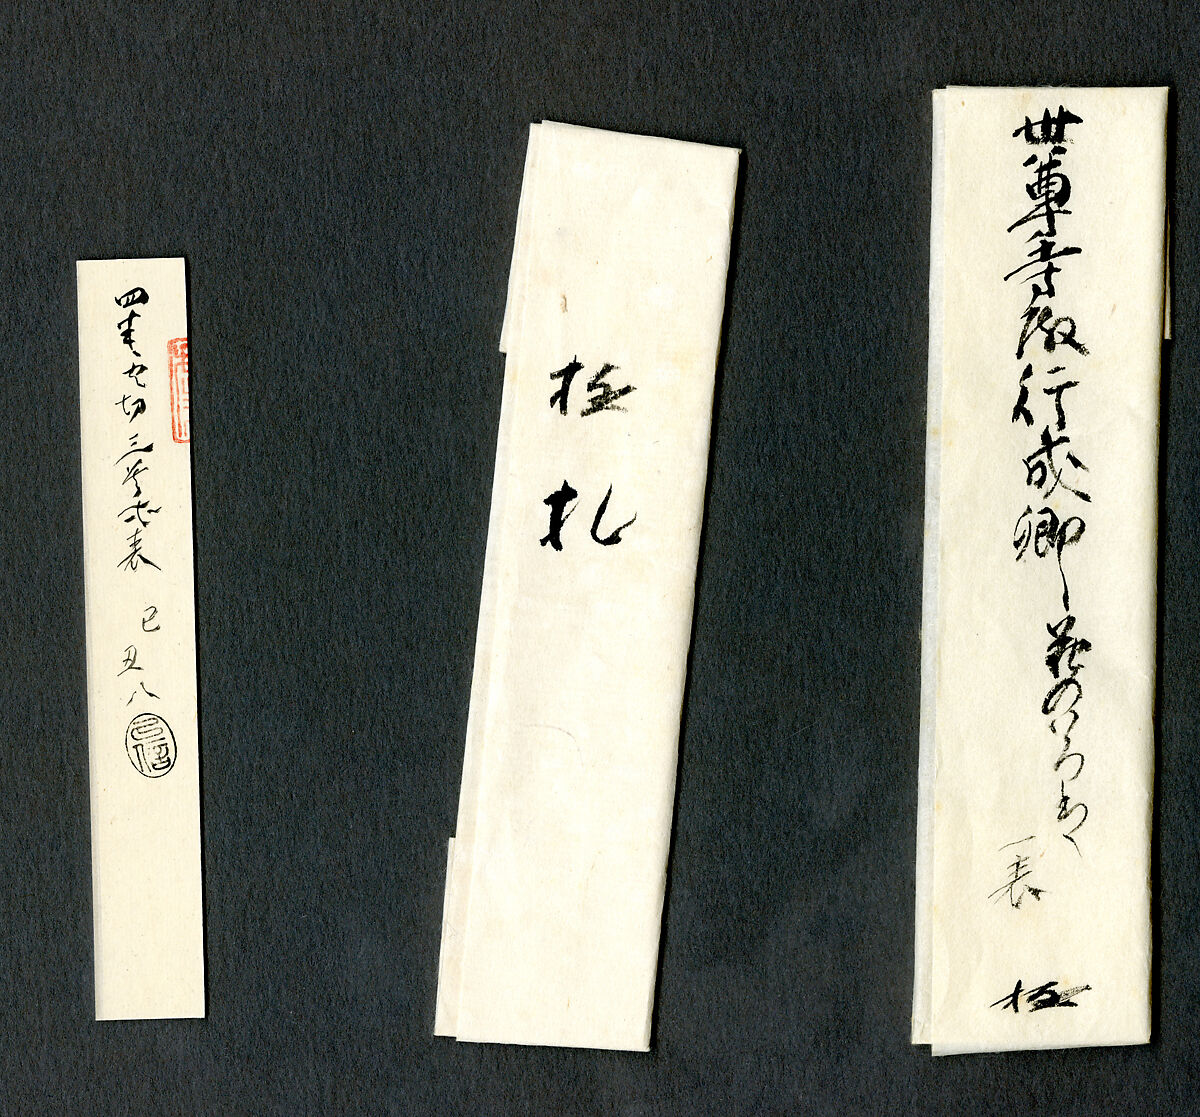 【「荒木切」『古今和歌集』　Three Poems from the Collection of Poems Ancient and Modern (Kokin wakashū), one of the Araki Fragments (Araki-gire)】平安時代‐伝藤原行成筆